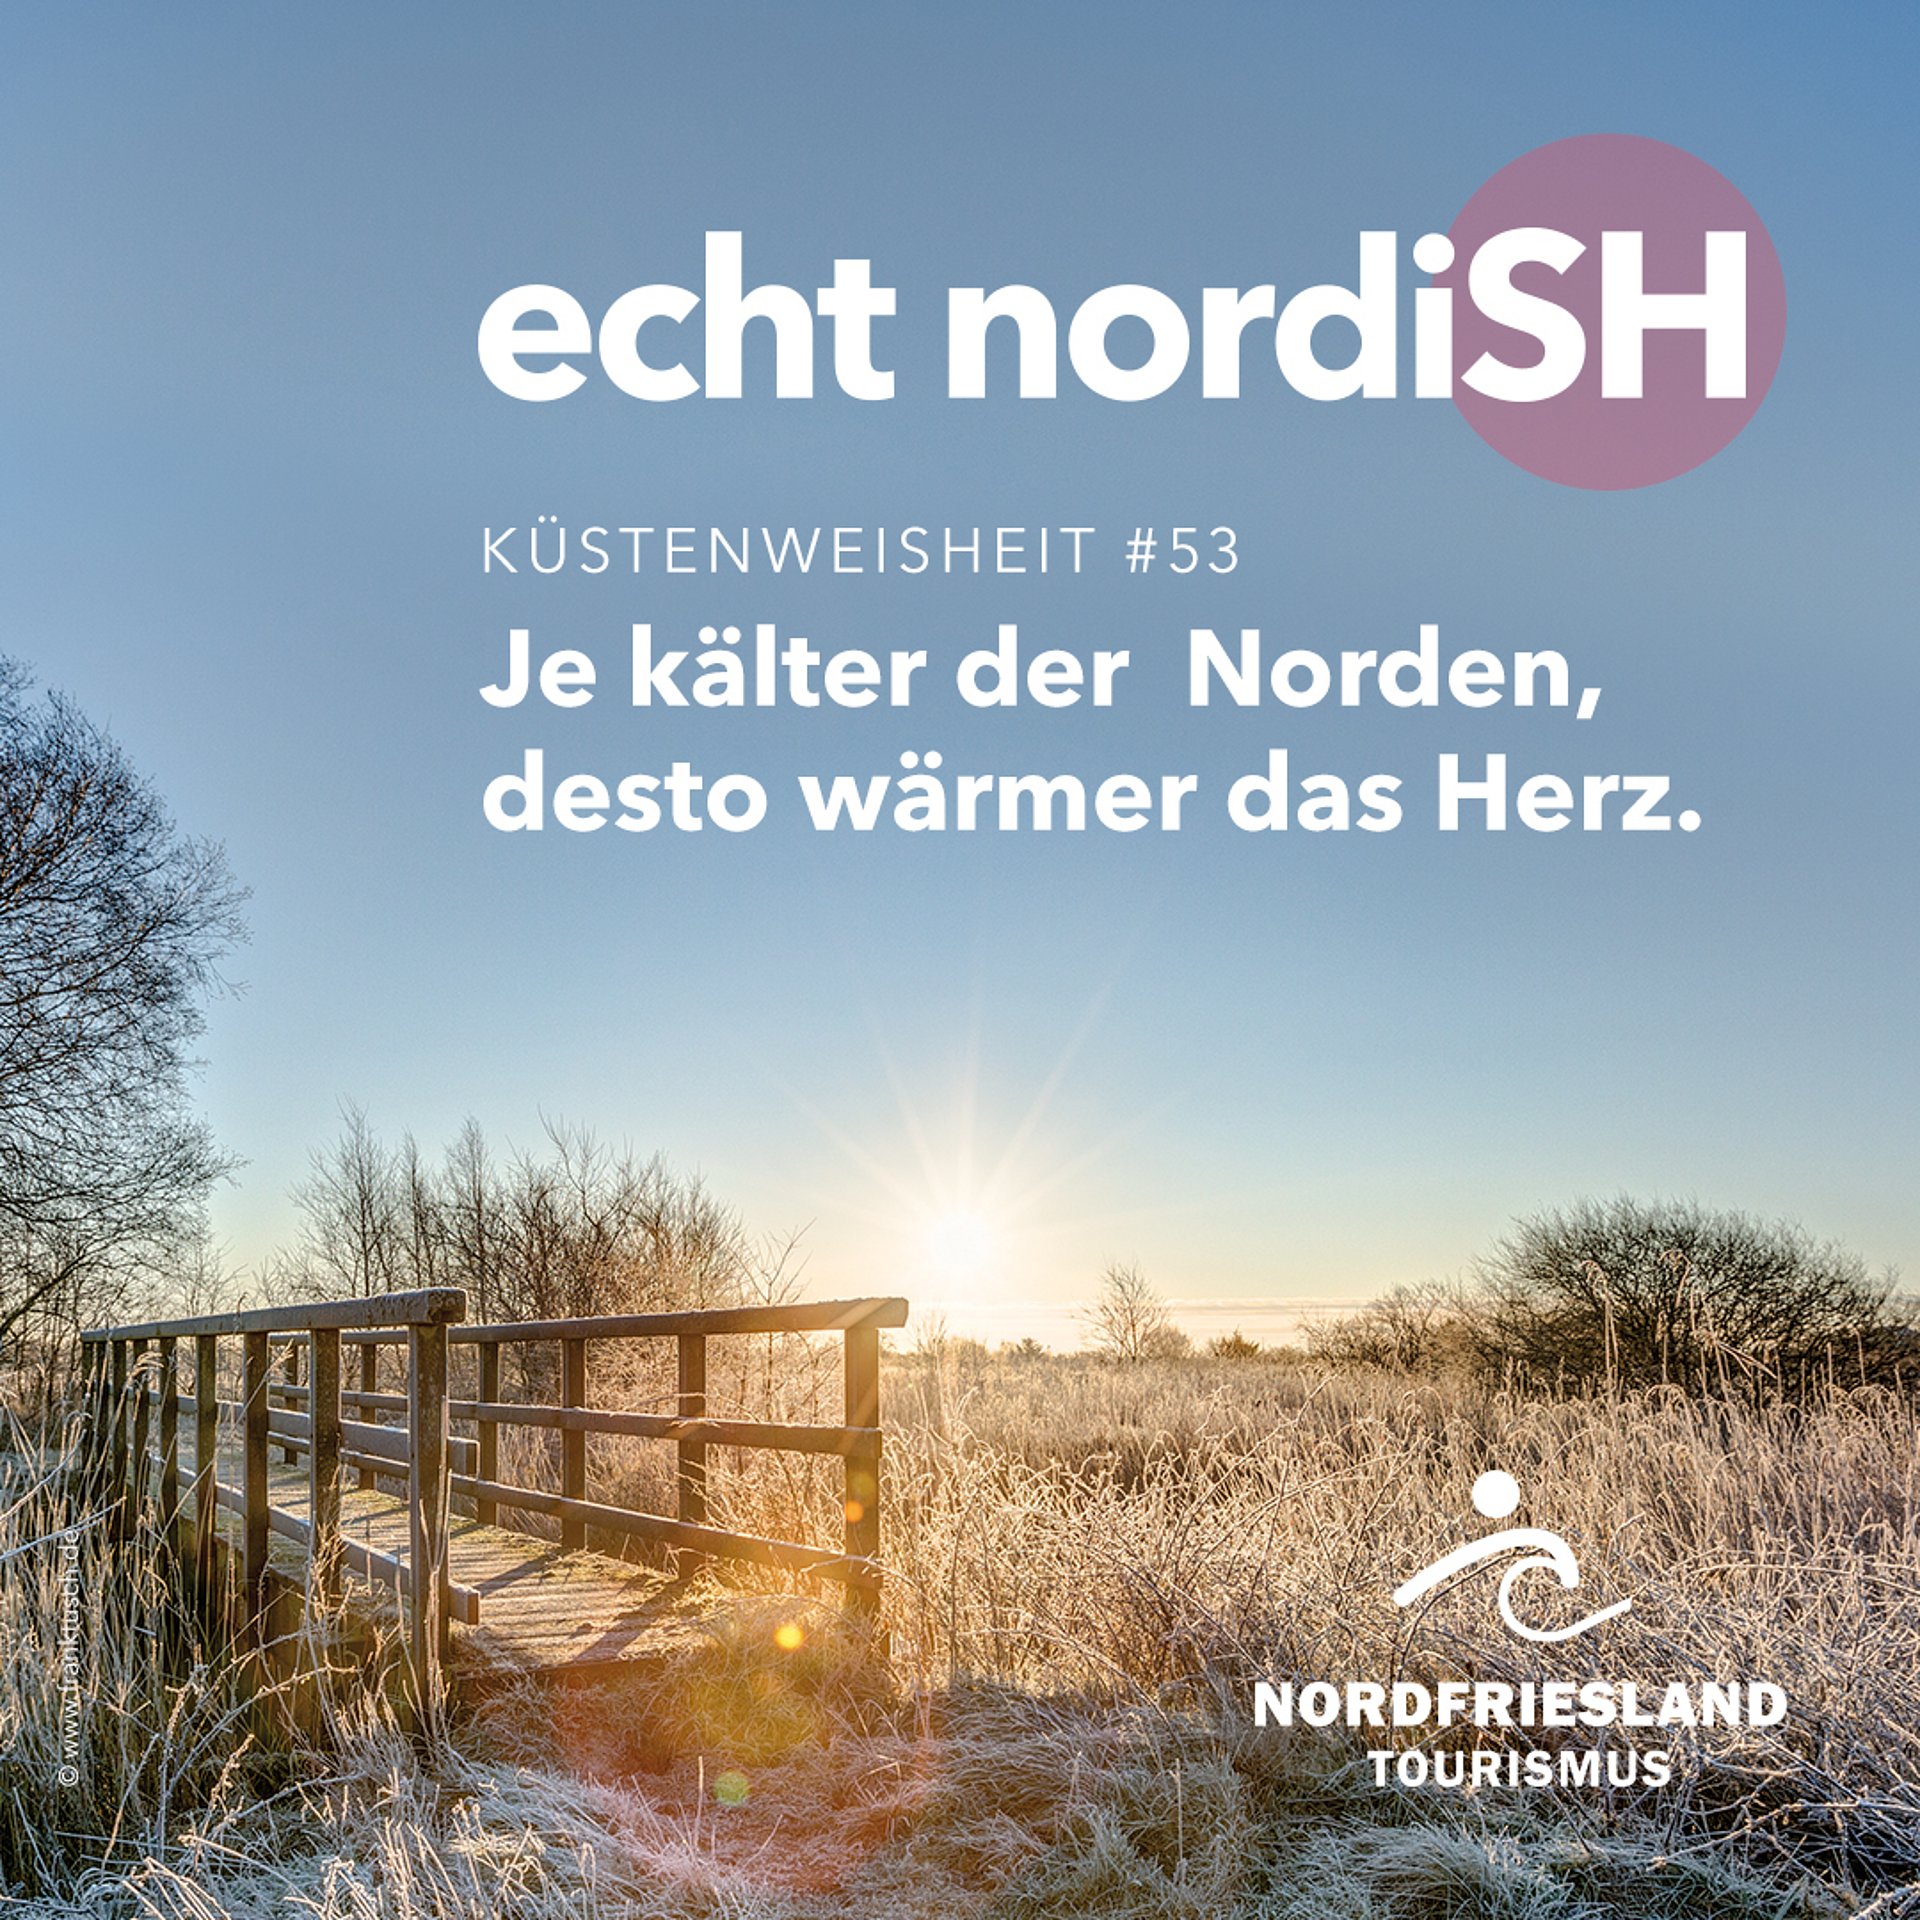 Frost liegt auf der nordfriesischen Landschaft, in der eine kleine Brücke über einen Fluss führt. Auf dem Bild liegt der Schriftzug "Küstenweisheit 53 - Je kälter der Norden, desto wärmer das Herz"